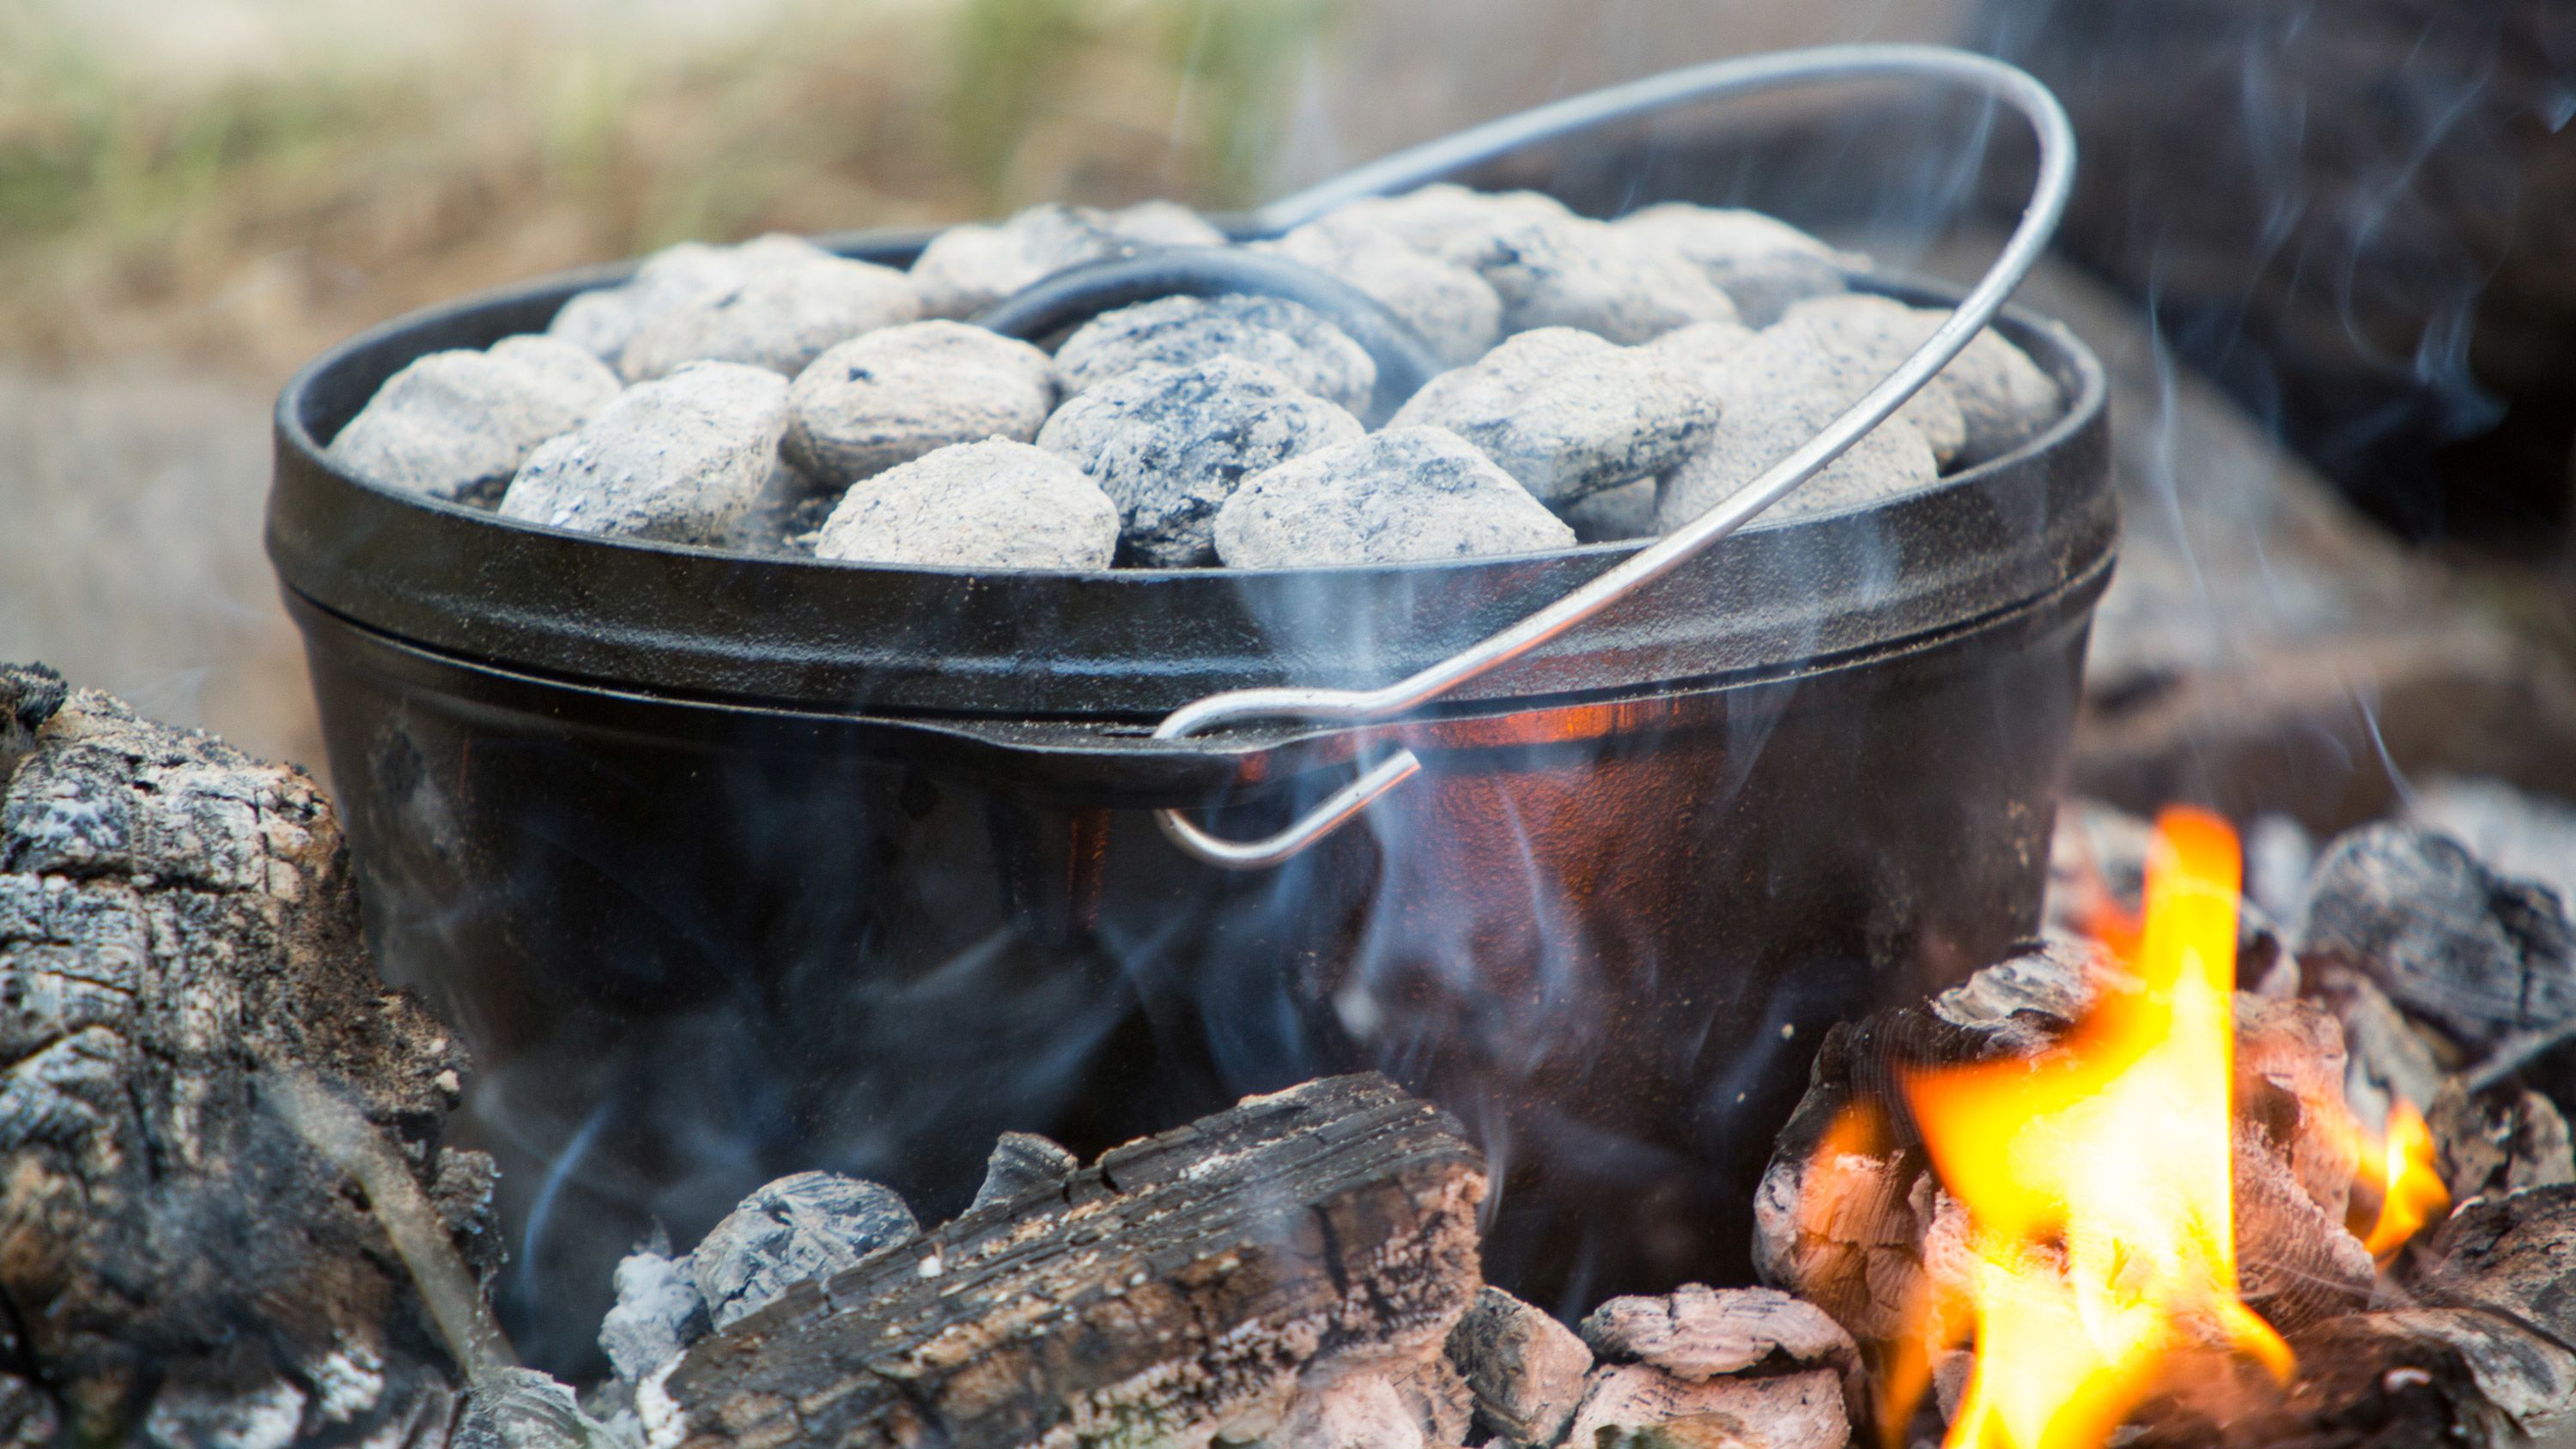 https://media.cnn.com/api/v1/images/stellar/prod/230627220859-05-summer-campfire-cooking-grill-recipe-wellness-restricted.jpg?c=original